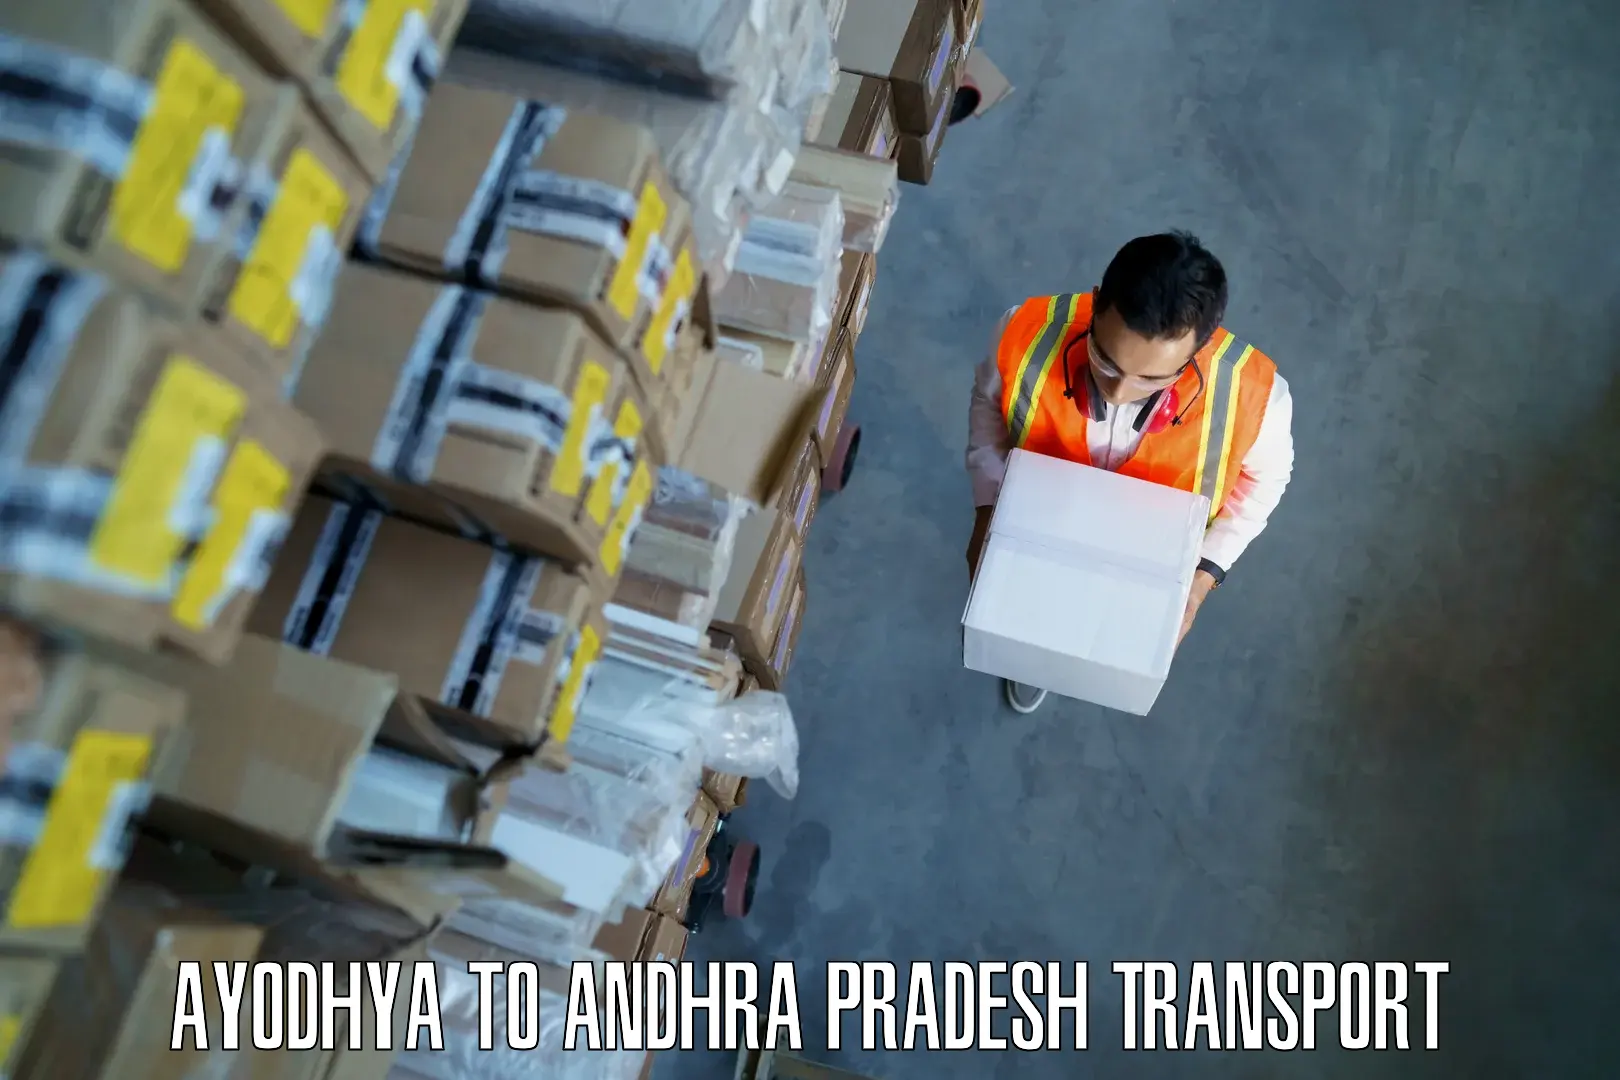 Goods delivery service Ayodhya to Mylavaram